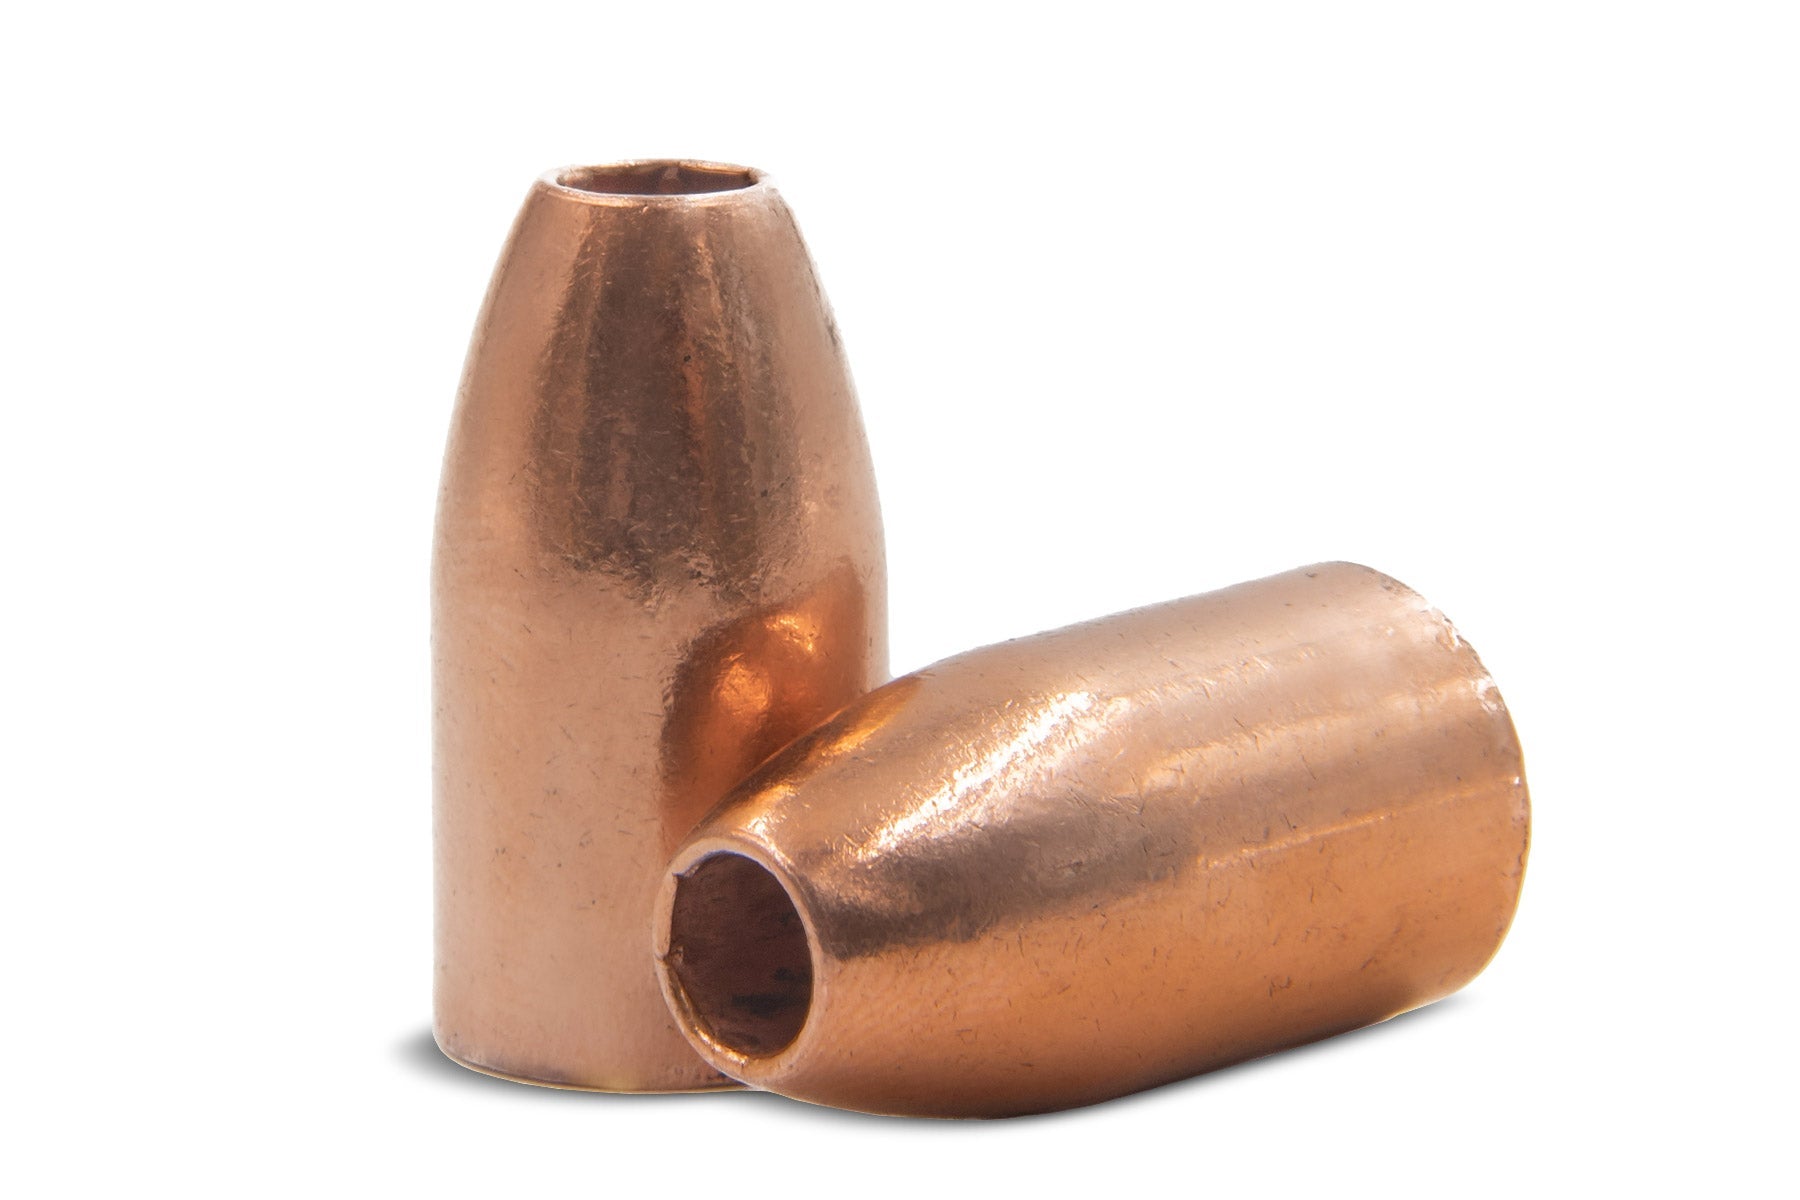 Thor Muzzleloader Bullets - Oregon Legal Hunting Bullets For Muzzleloaders